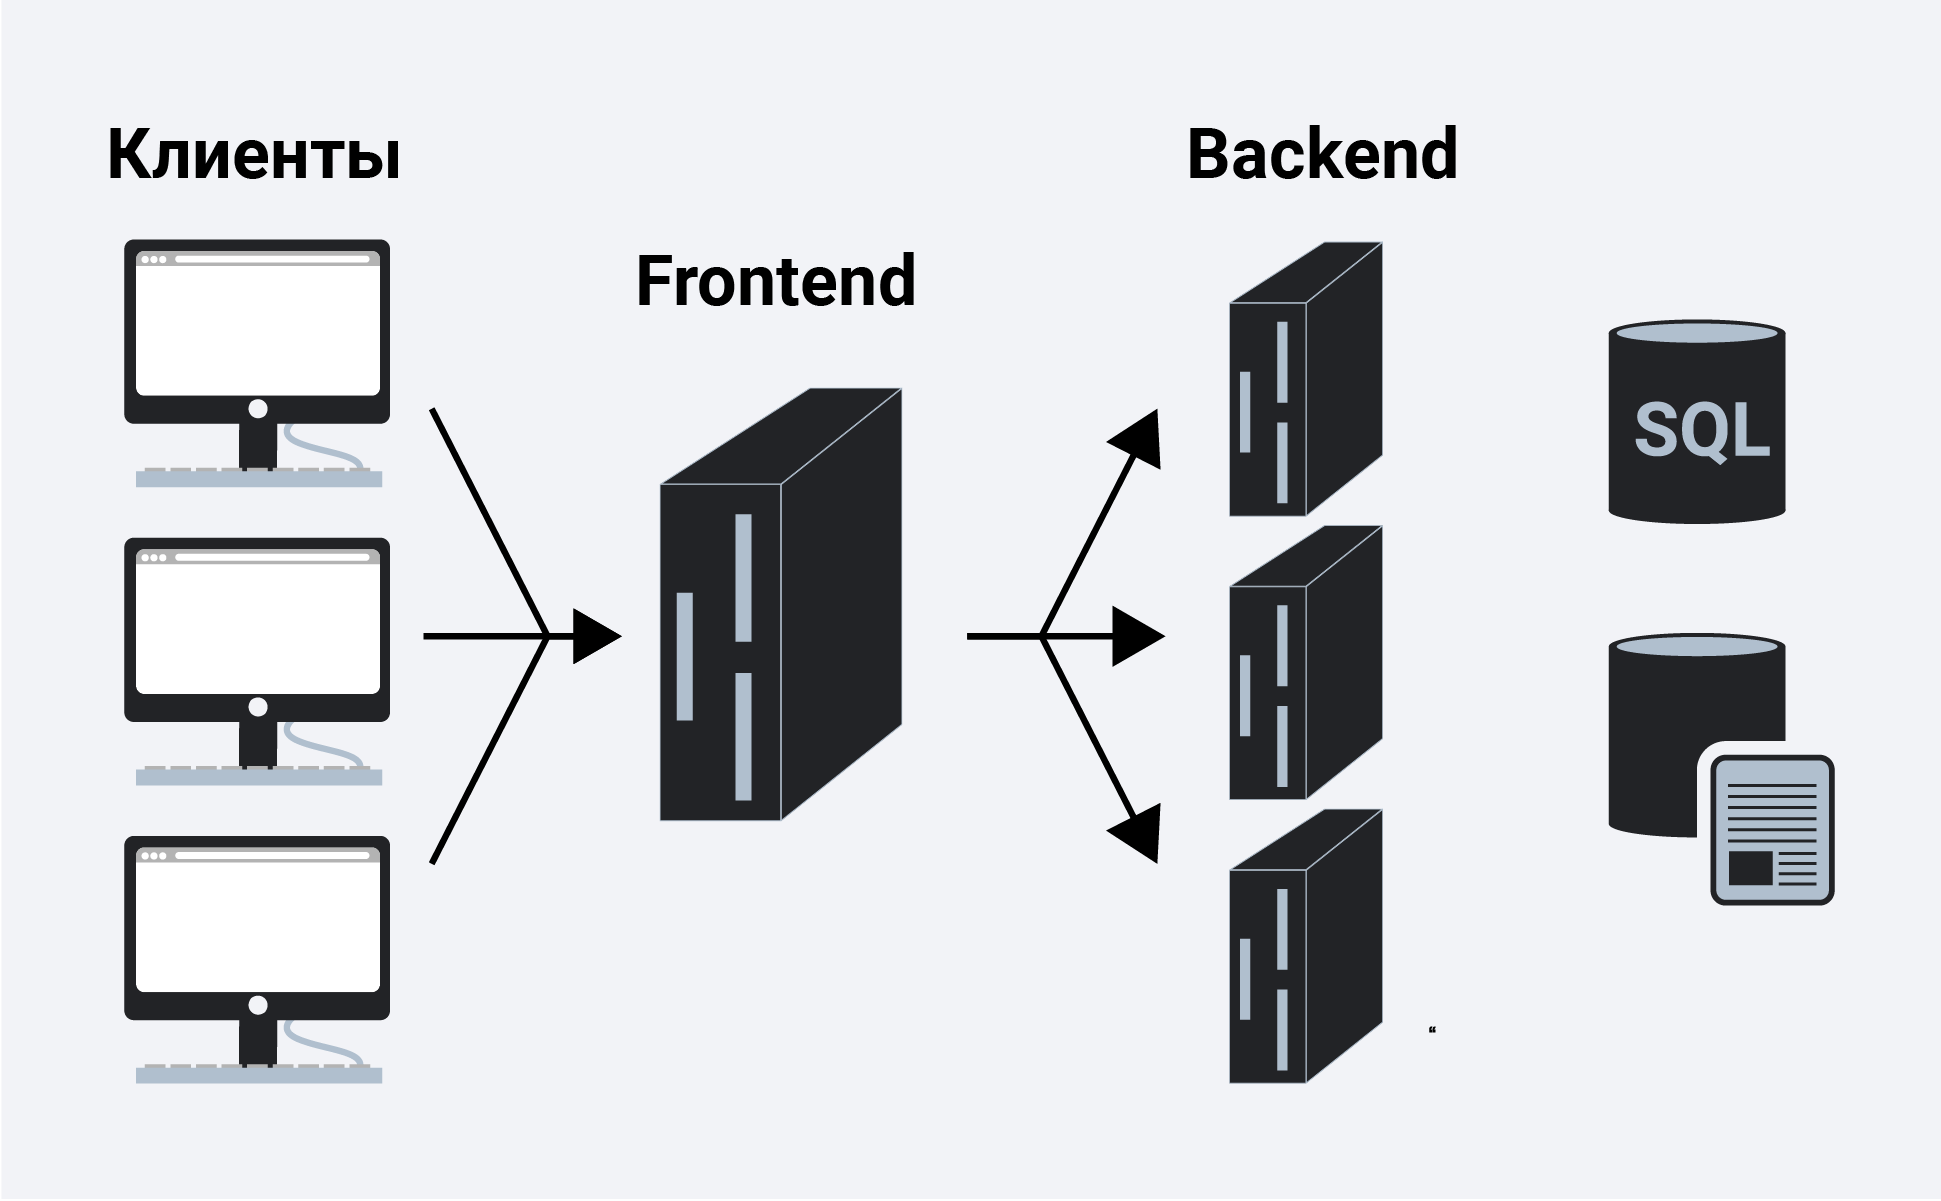 Бэк приложения. Фронтенд и бэкенд. Frontend и backend разработчики. Что такое frontend и backend разработка. Front end back end.